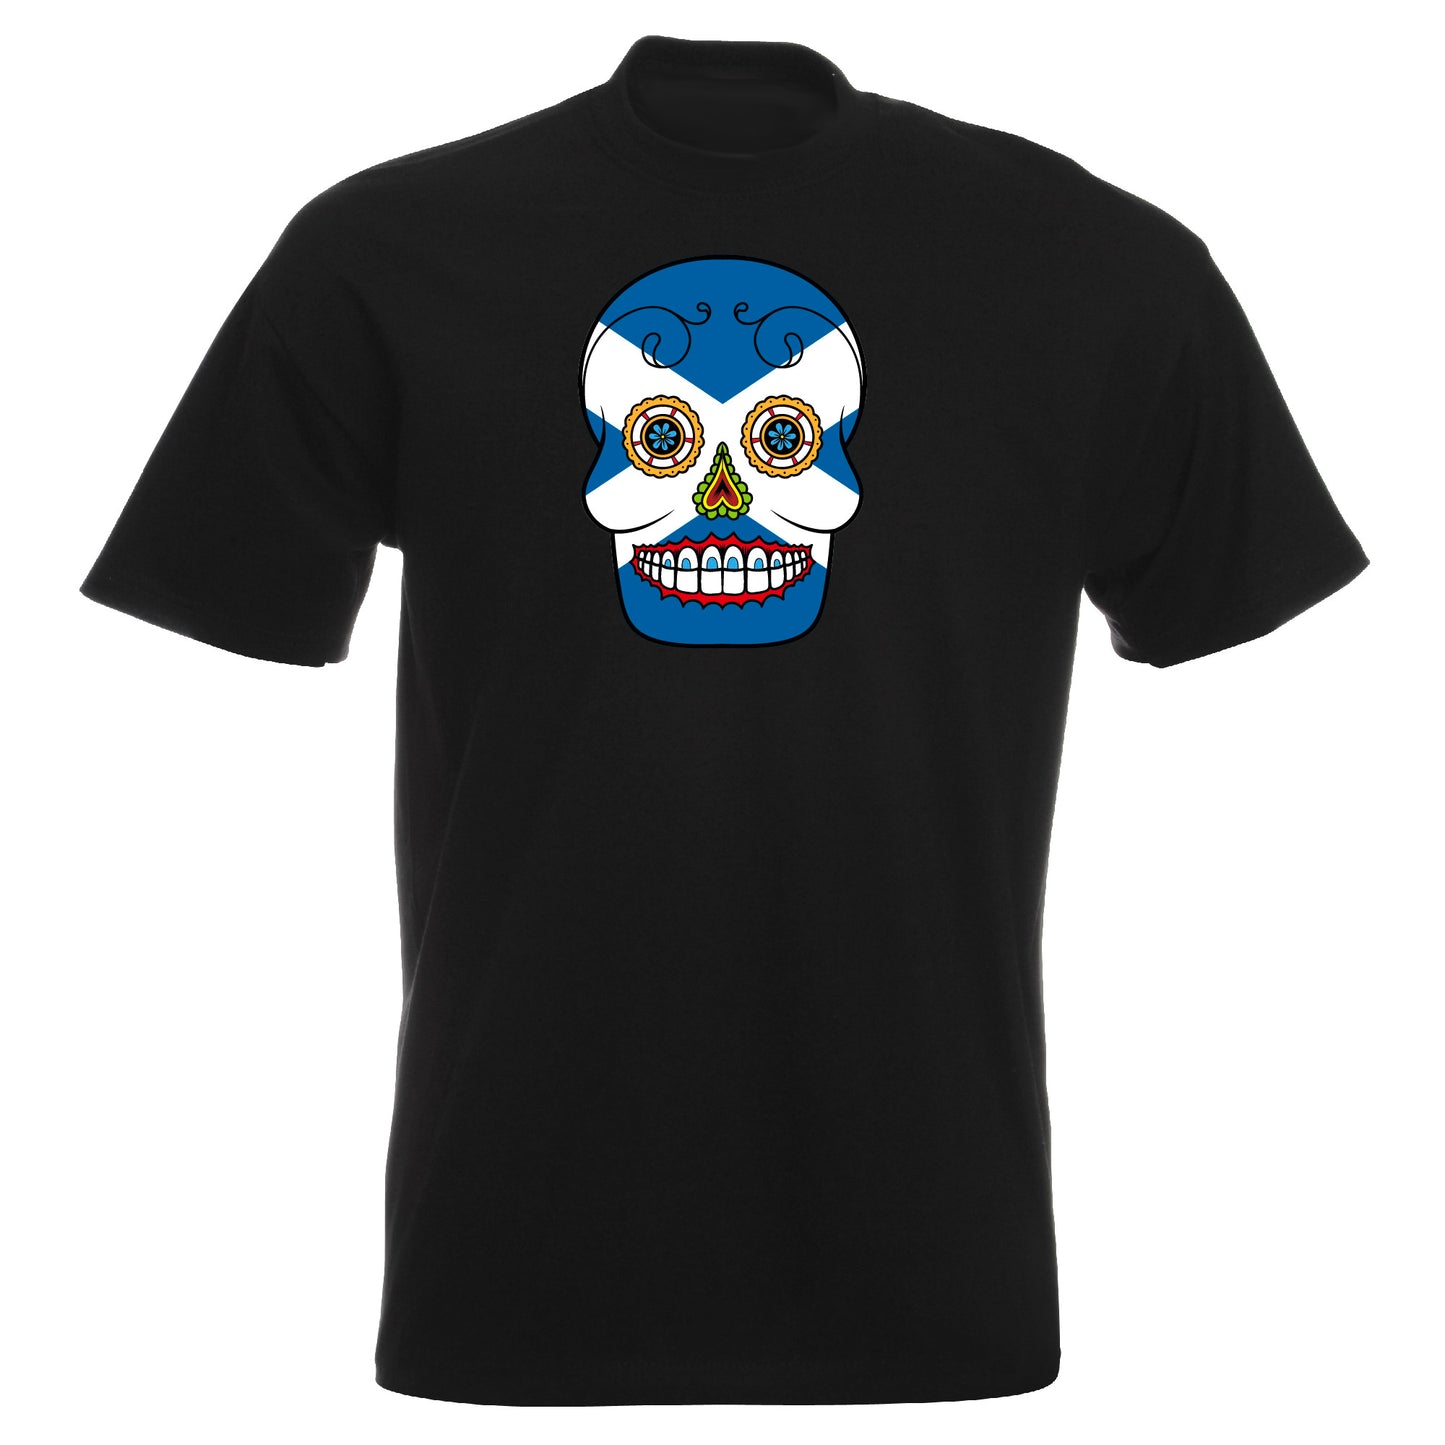 INDIGOS UG - T-Shirt Herren - Schottland - Skull - Fussball